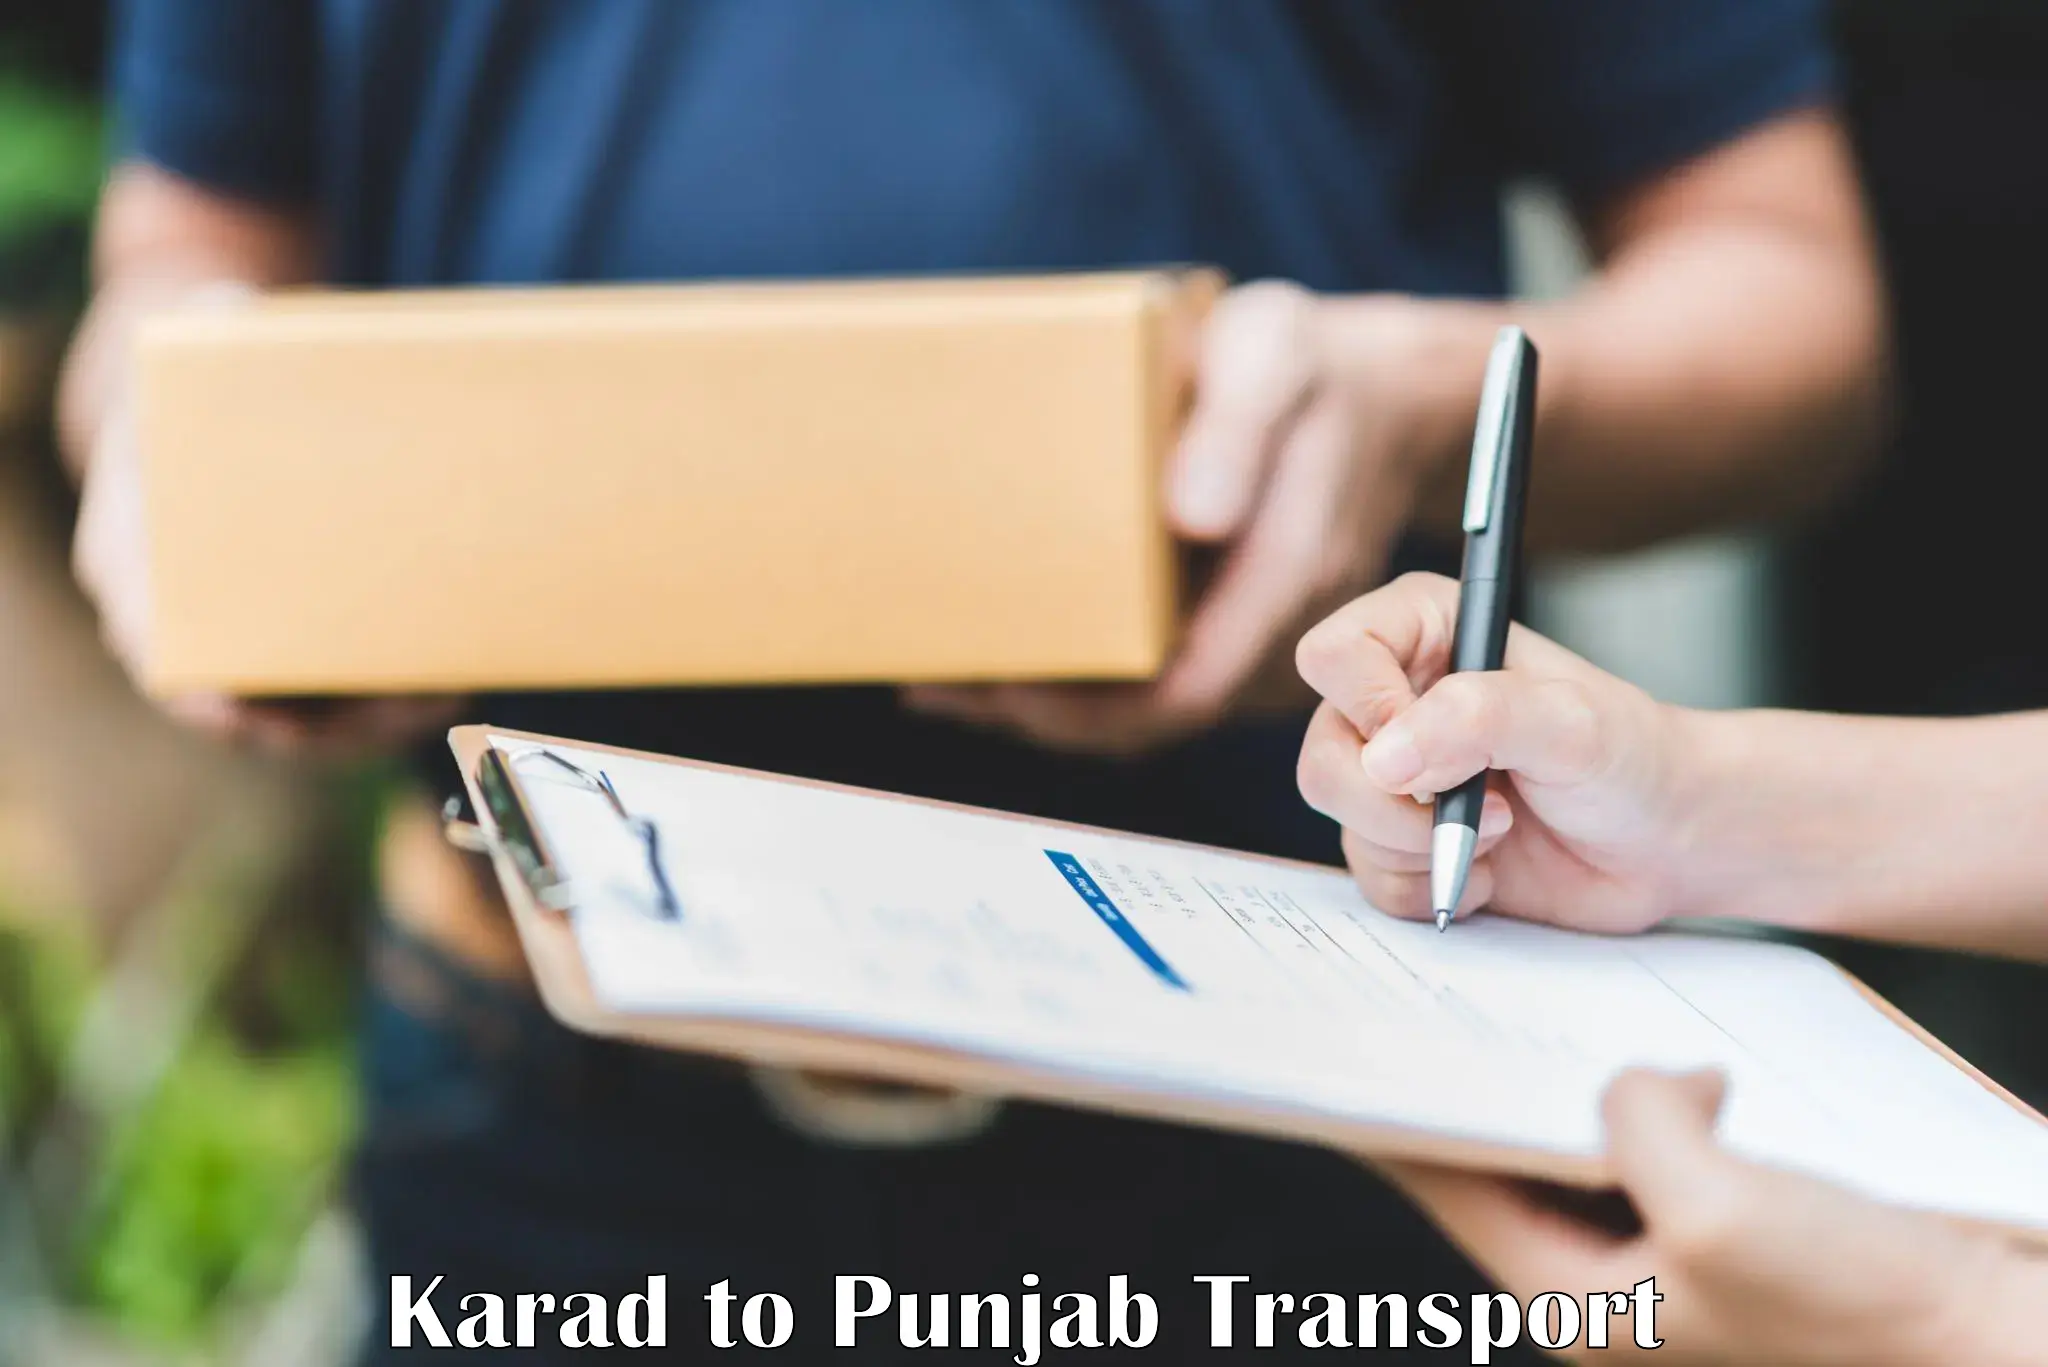 Nearest transport service Karad to Firozpur